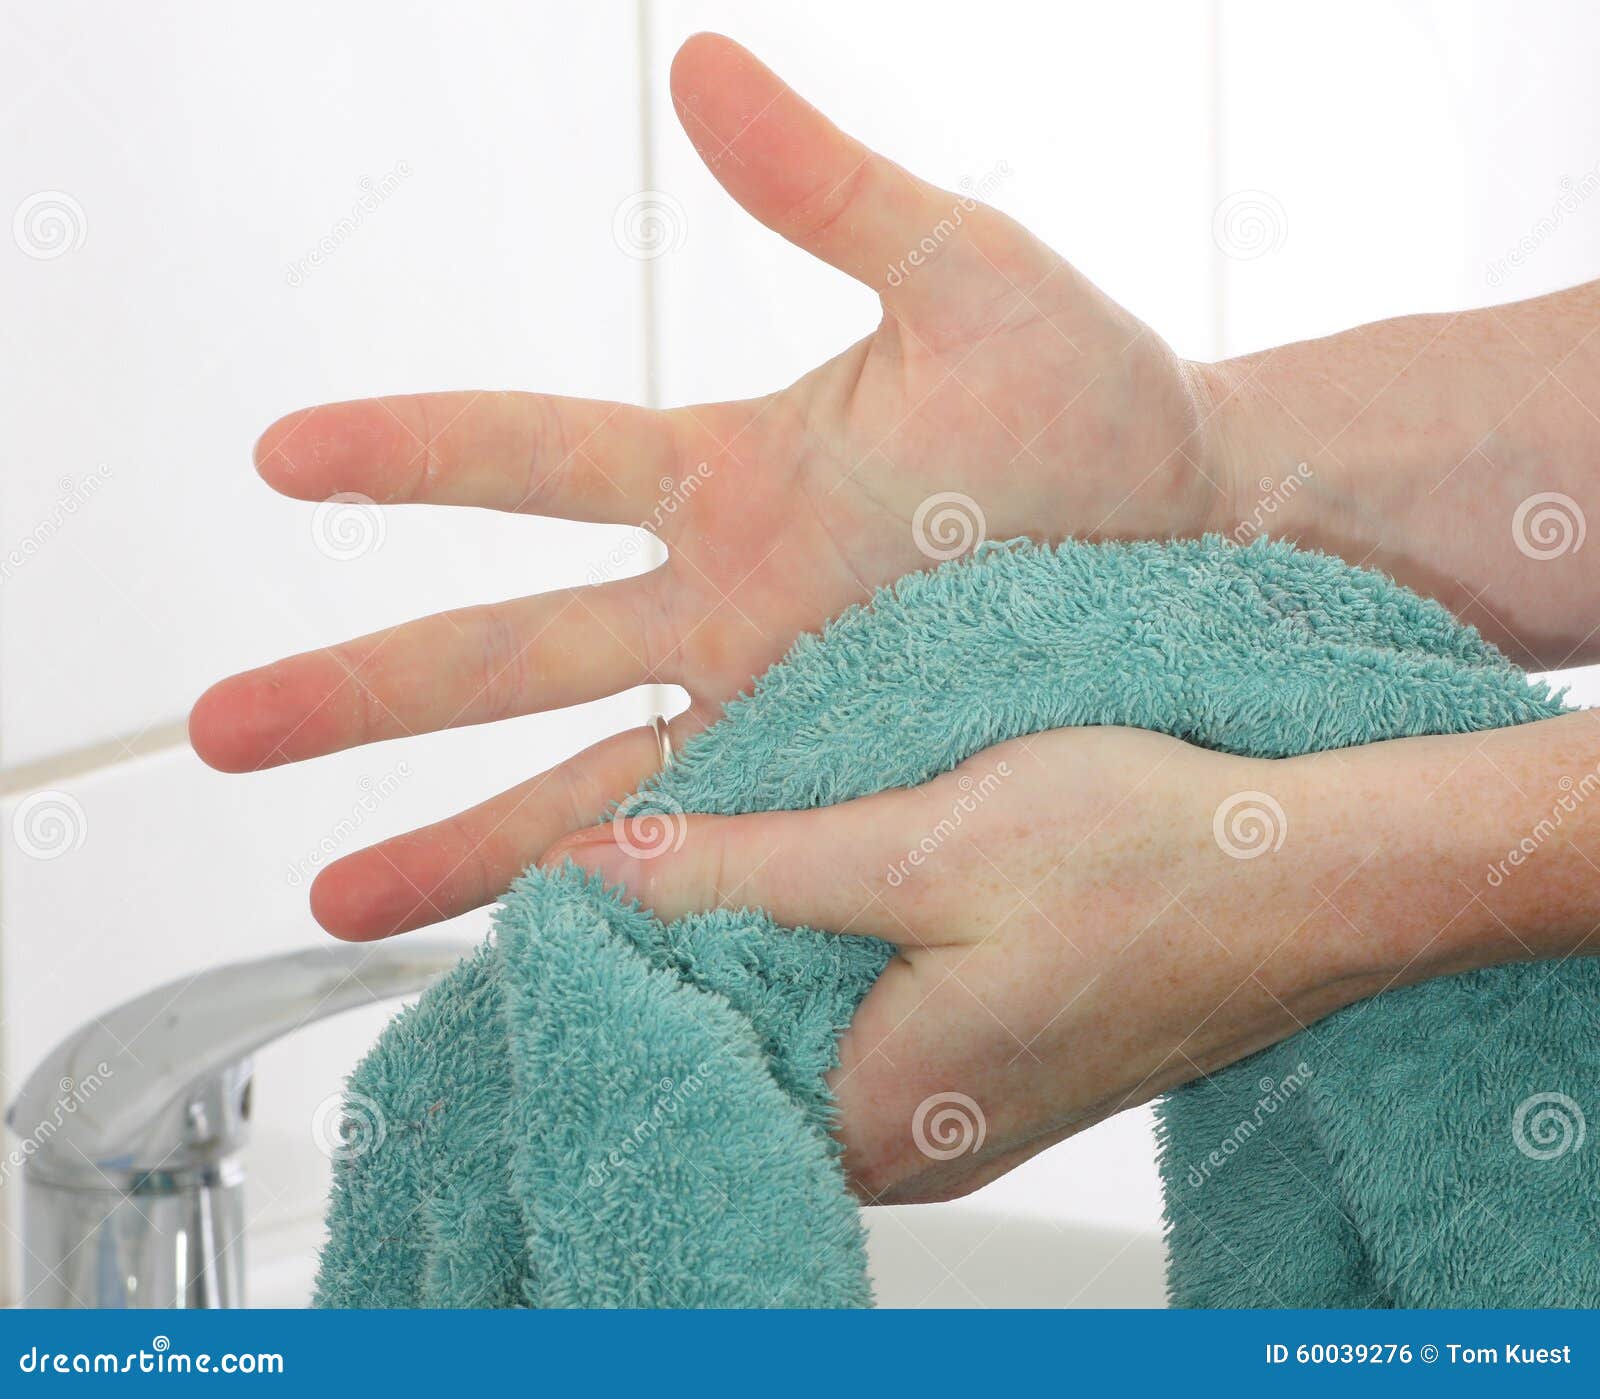 Чужим полотенцем. Вытирание рук полотенцем. Полотенце для вытерание рук. Полотенце для рук медперсонала. Вытирать руки детские.